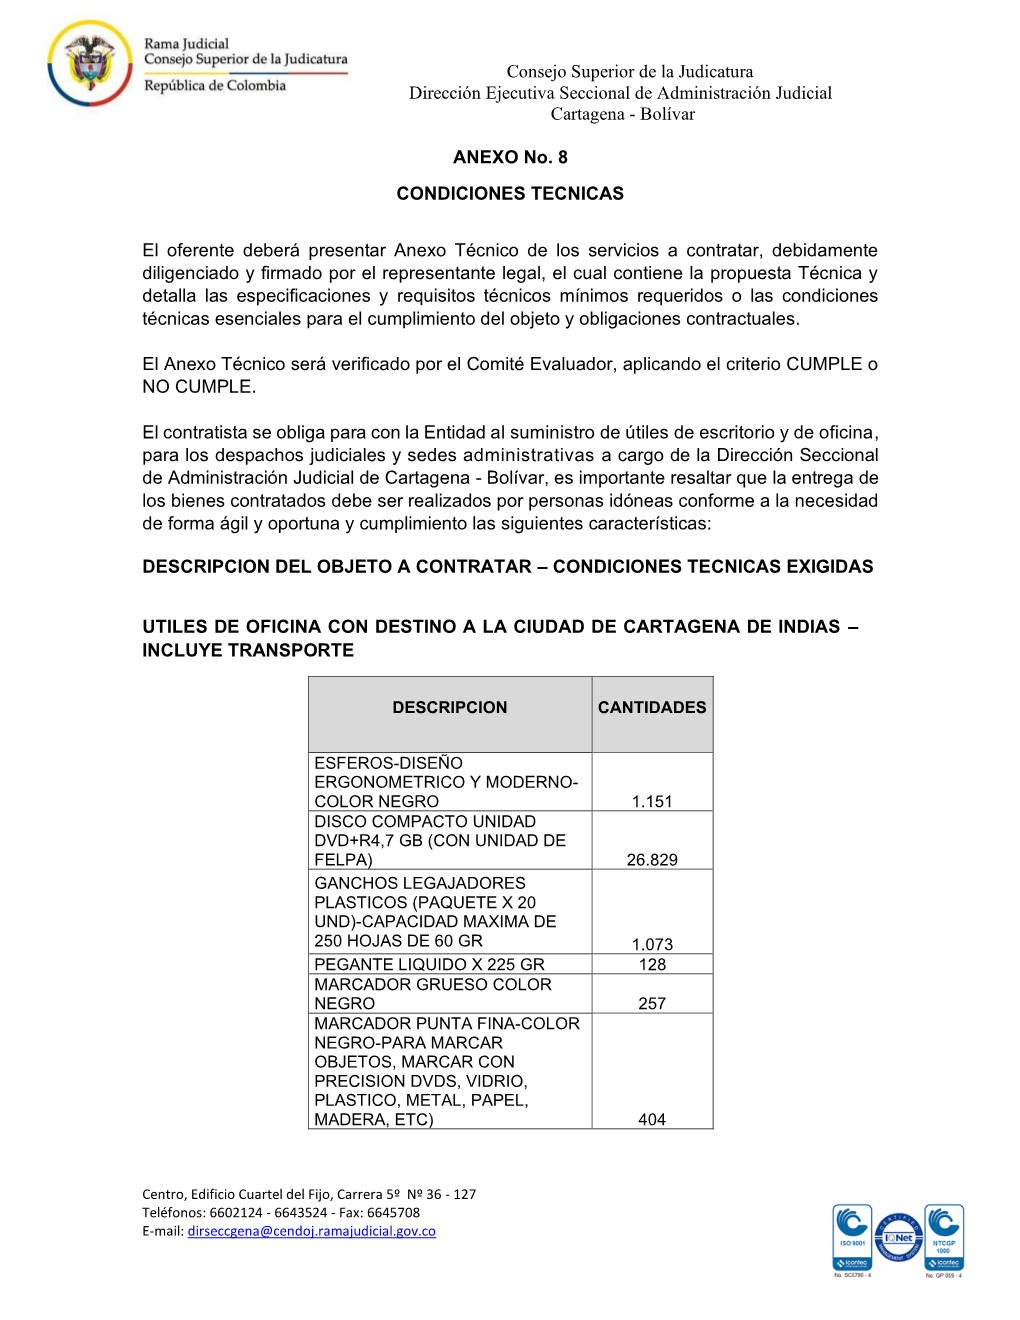 Consejo Superior De La Judicatura Dirección Ejecutiva Seccional De Administración Judicial Cartagena - Bolívar